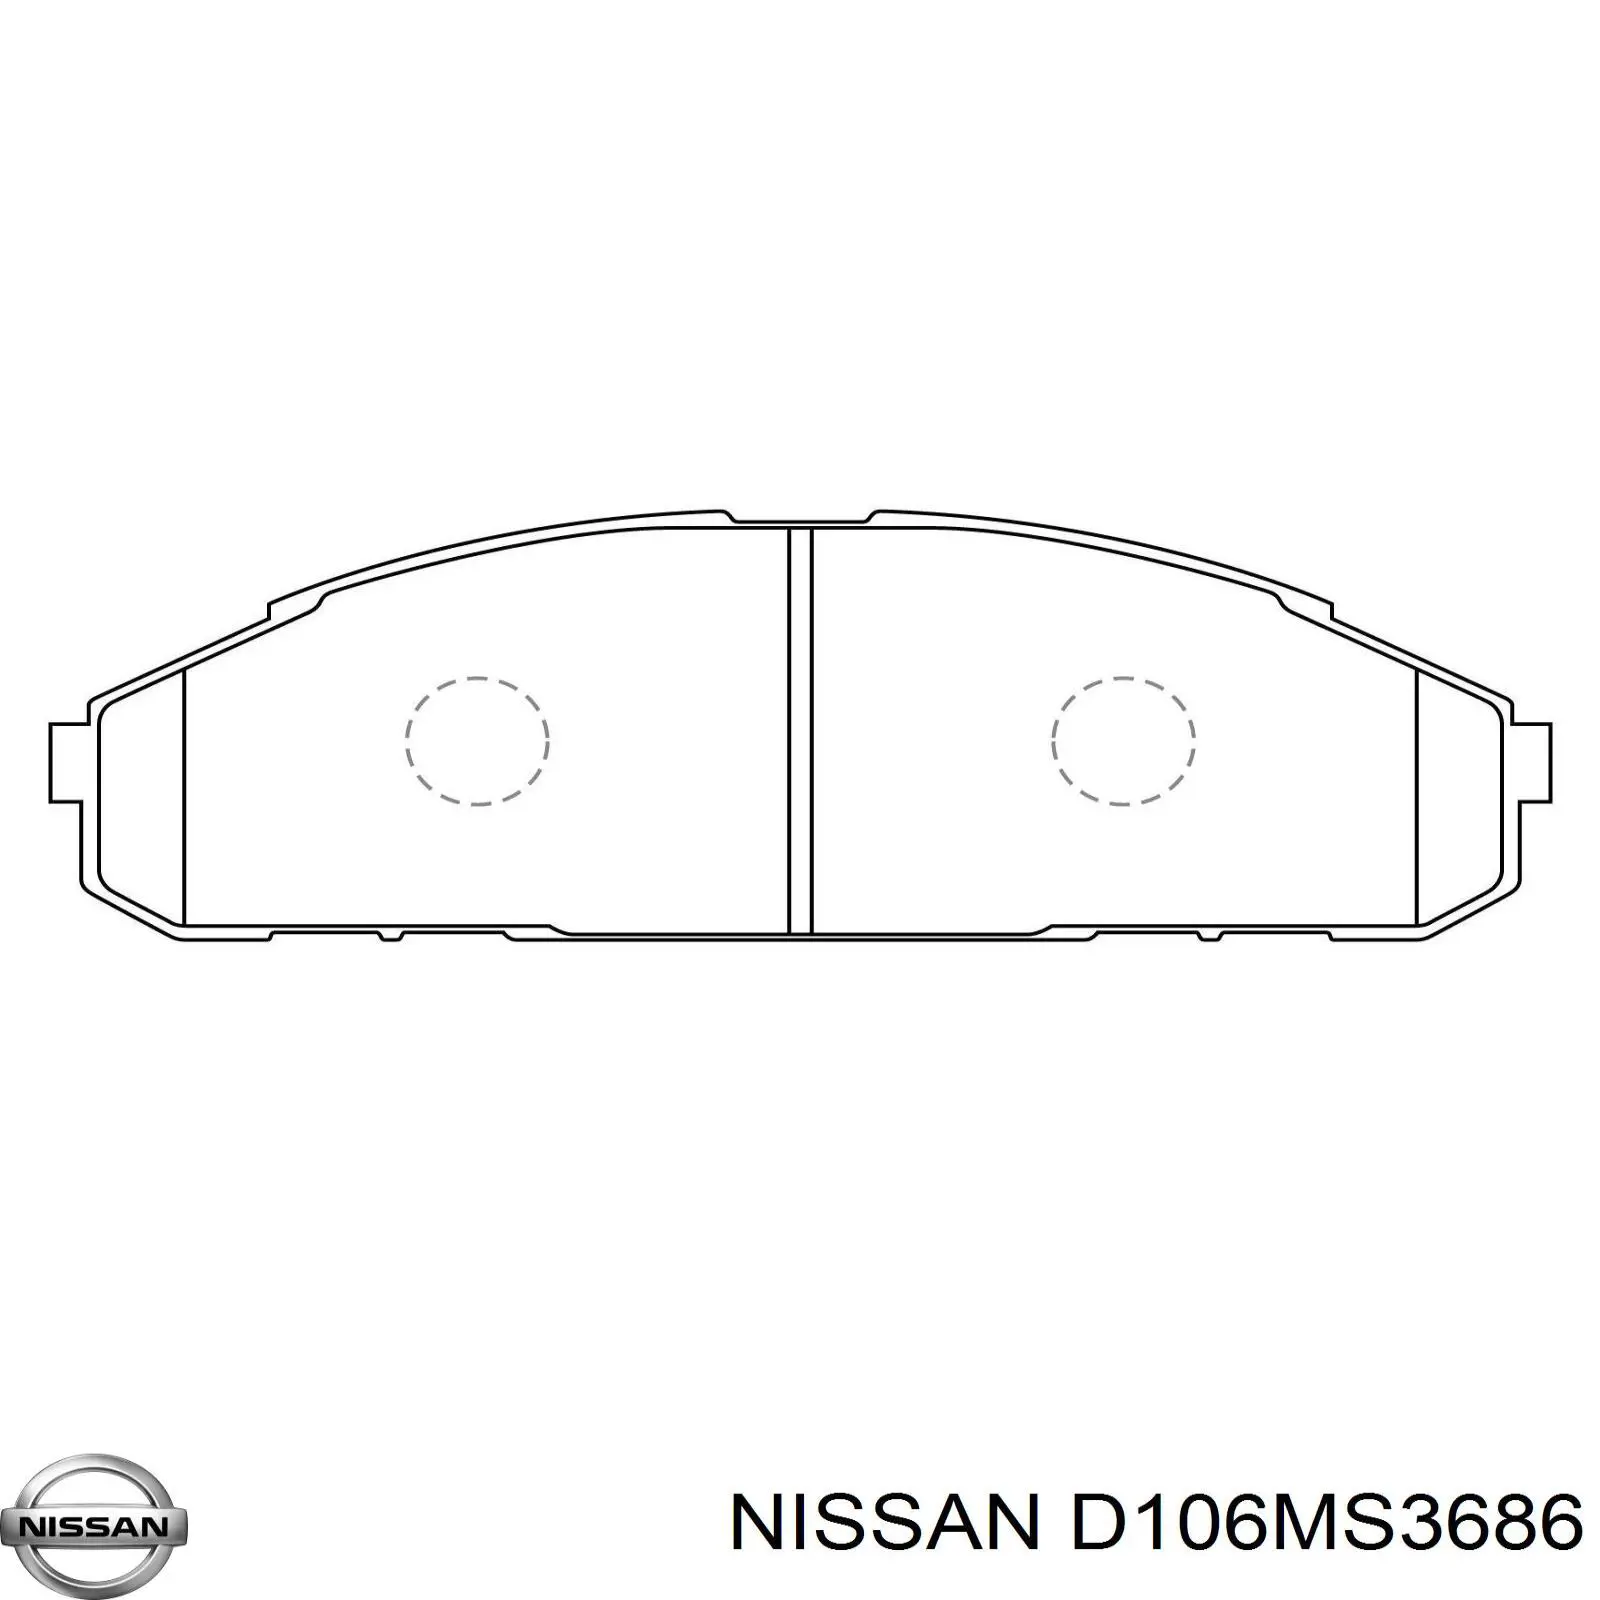 D106MS3686 Nissan pastillas de freno delanteras